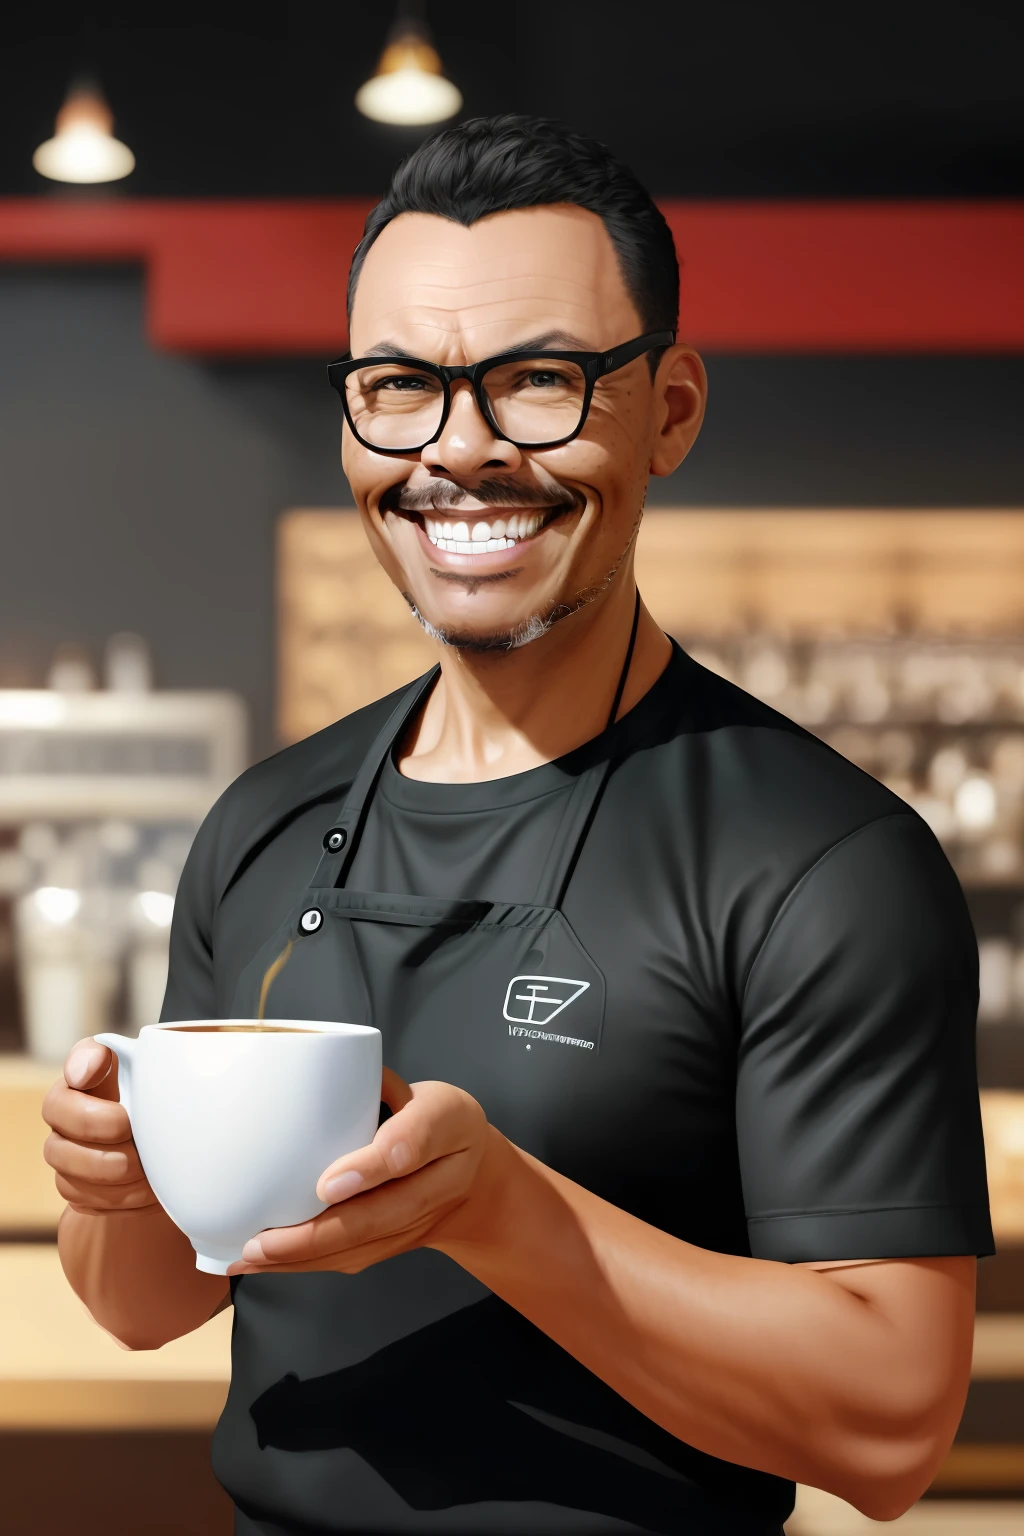 GuttonerdVision4, barista (homem) com sorriso discreto enquanto serve uma xícara de café, cinematic, por Artgerm e rossdraw e wlop, realista, K, tendência em artstation, obra de arte, melhor qualidade